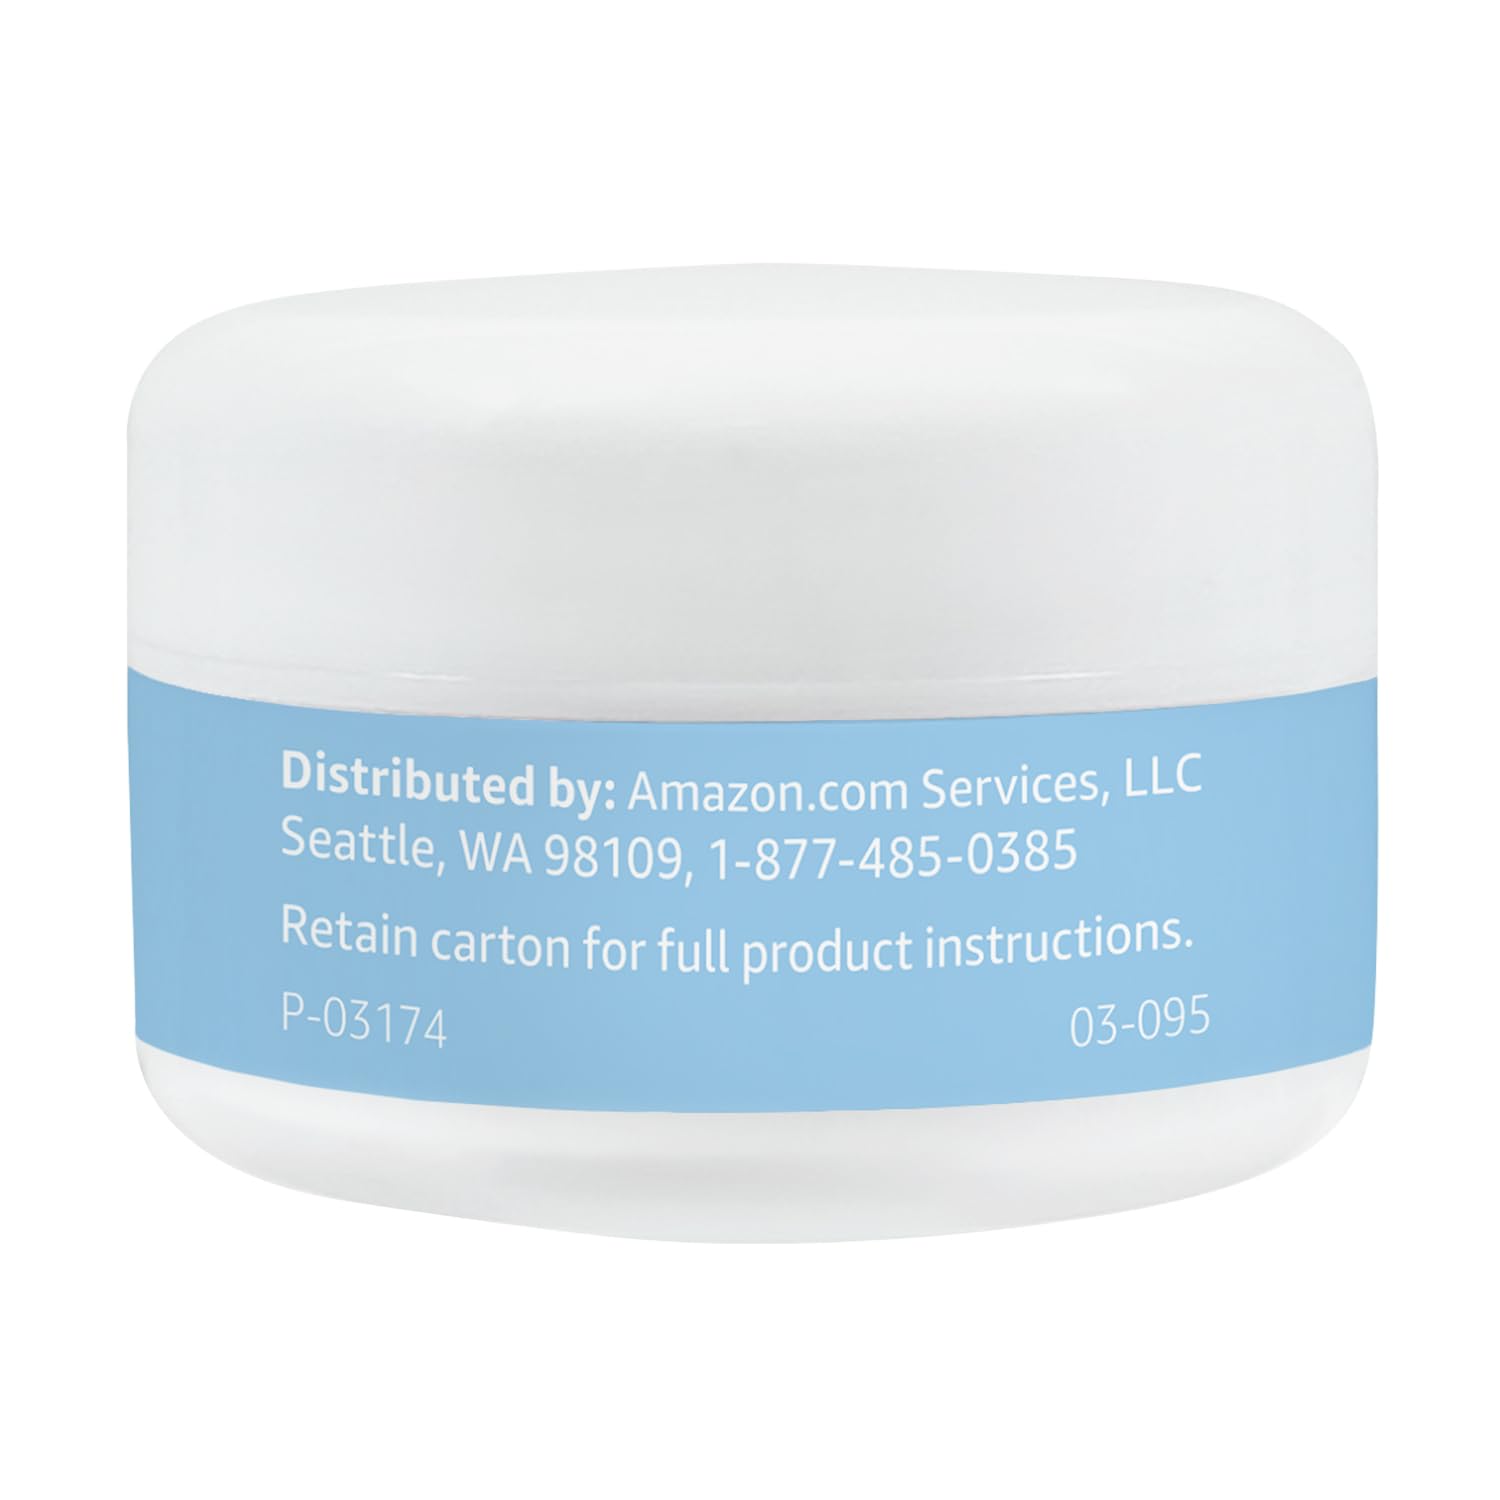 Amazon Basics Moisturizing Gel Eye Cream, 0.5 Fluid Ounces, 1-Pack